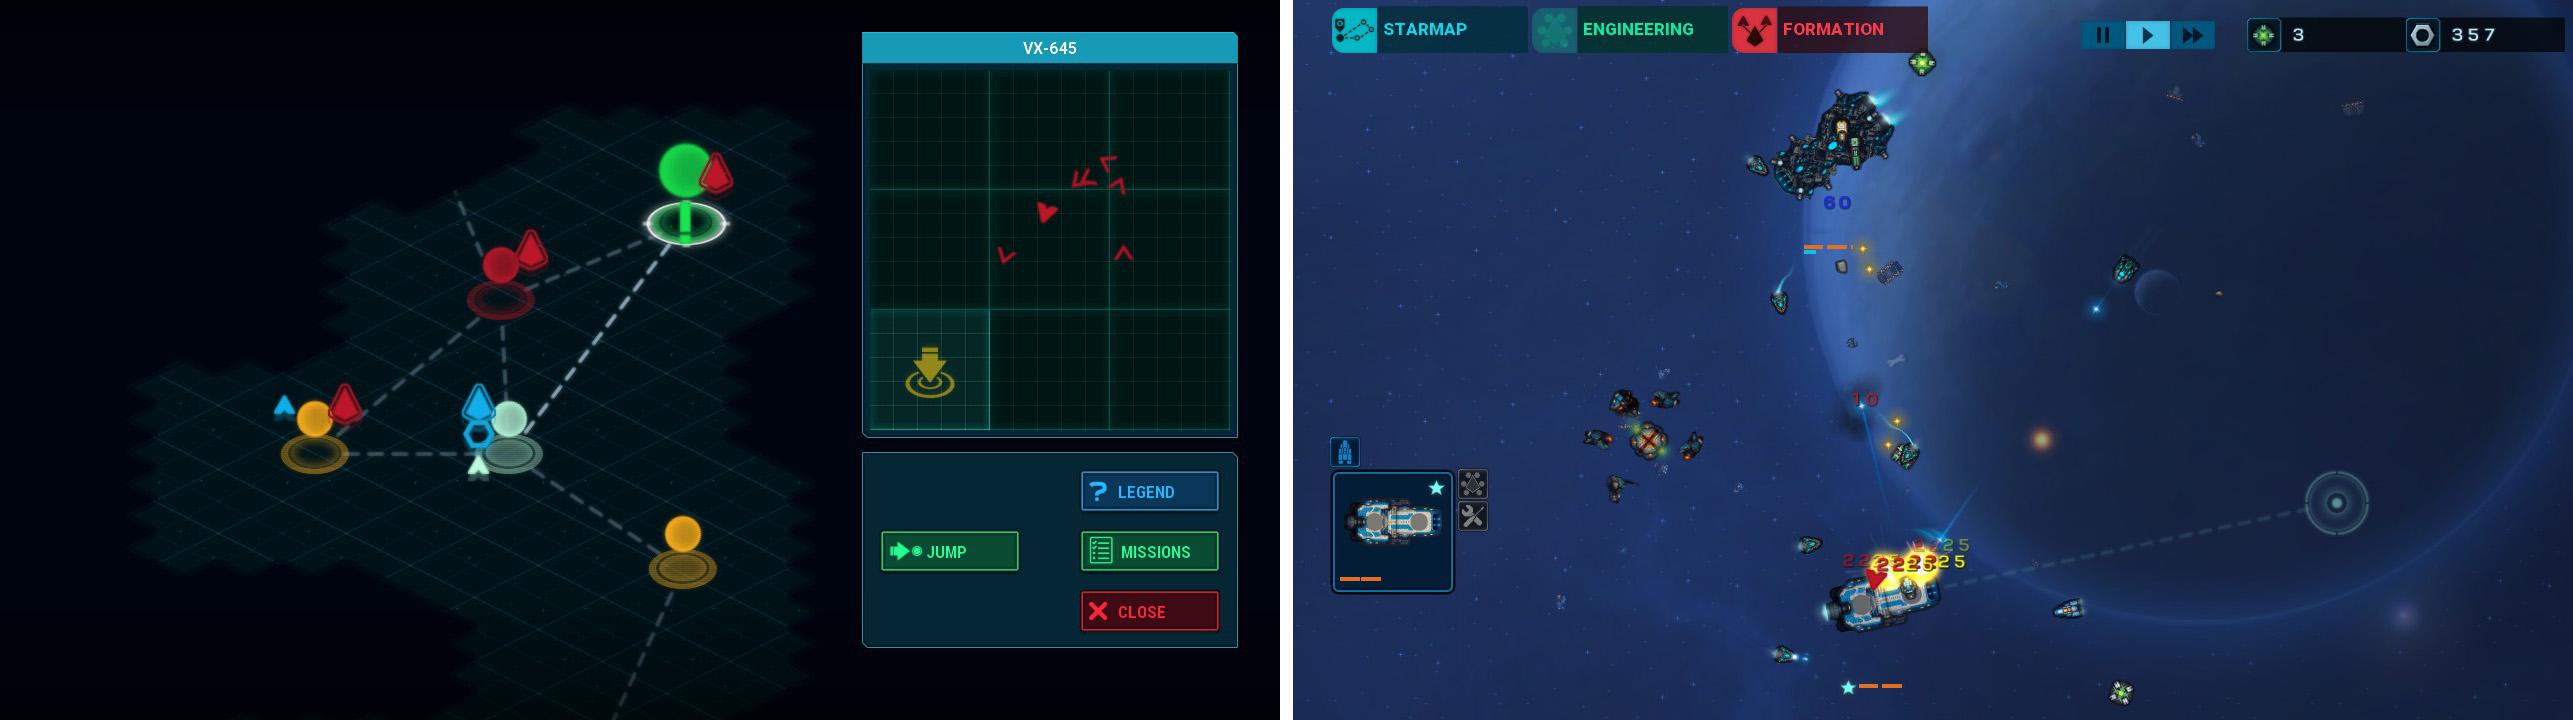 画像左: 移動パート。移動先の星系と、ワープアウトする位置を決めてジャンプする。 画像右: 戦闘パート。リアルタイム制ストラテジー。基本的には移動と戦闘のくりかえし。『FTL』のように移動先での選択式イベントはない。